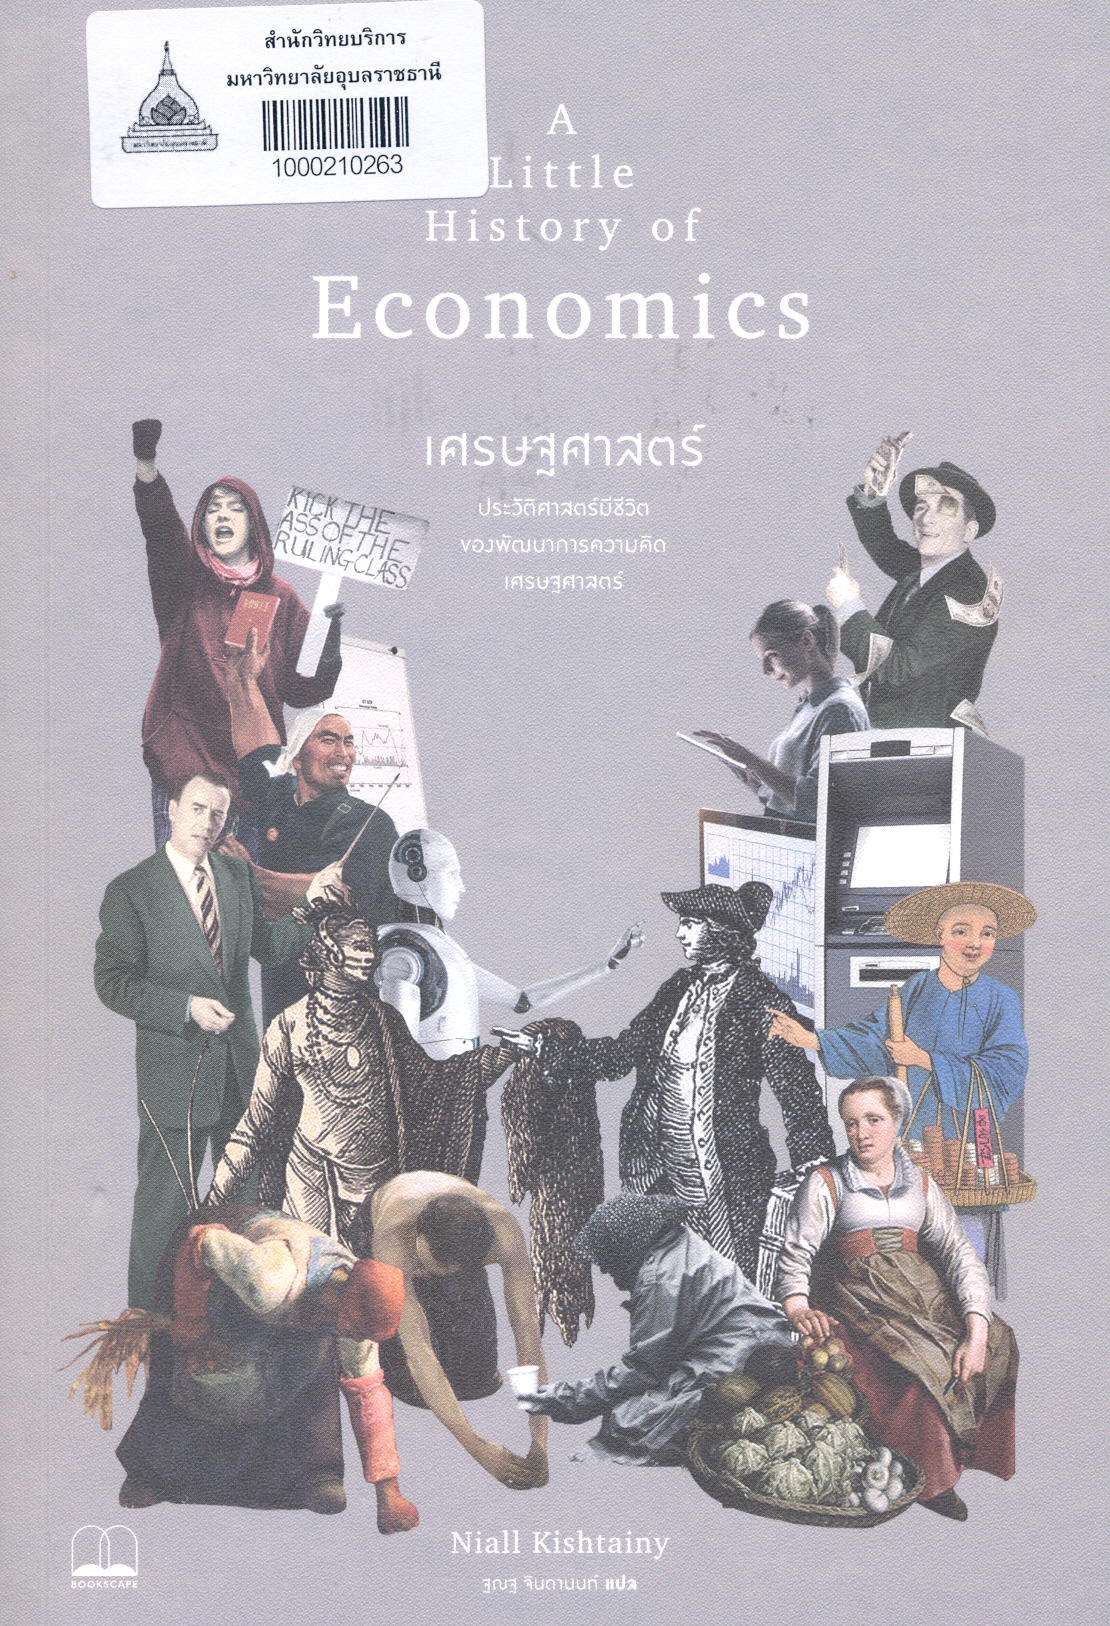 เศรษฐศาสตร์ : ประวัติศาสตร์มีชีวิตของพัฒนาการความคิดเศรษฐศาสตร์ 